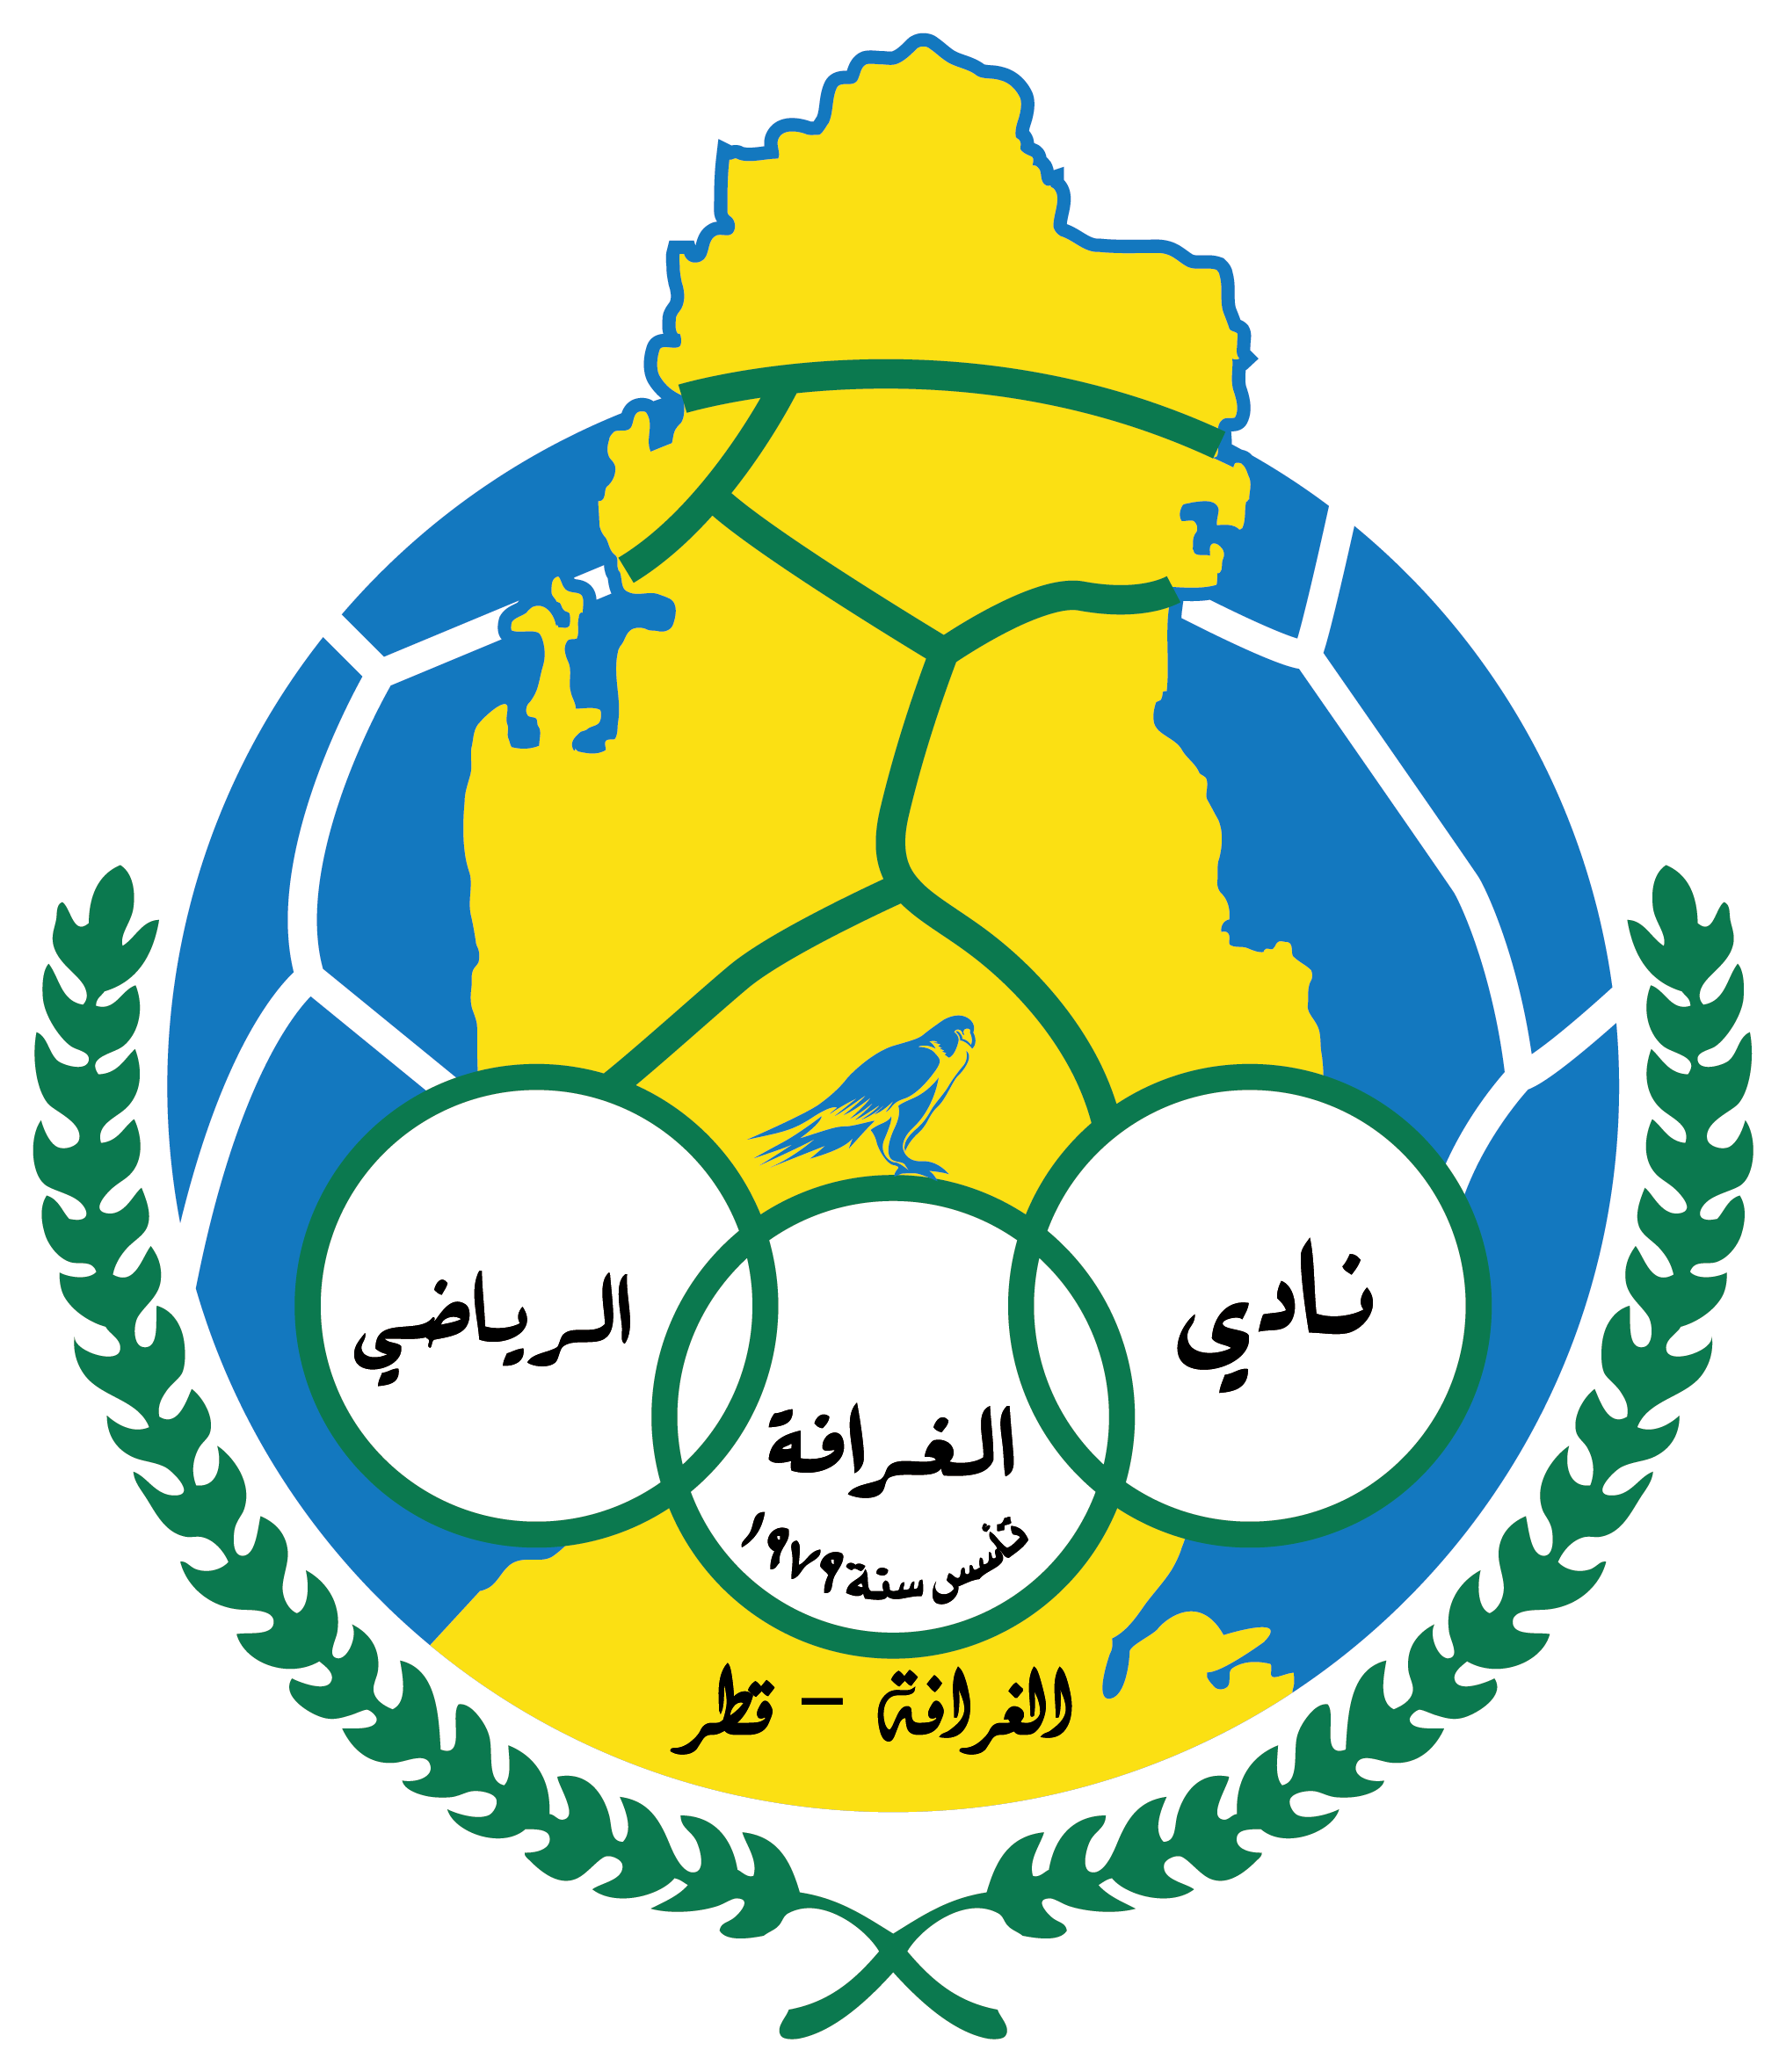 阿爾加拉法足球俱樂部(阿爾加拉法)